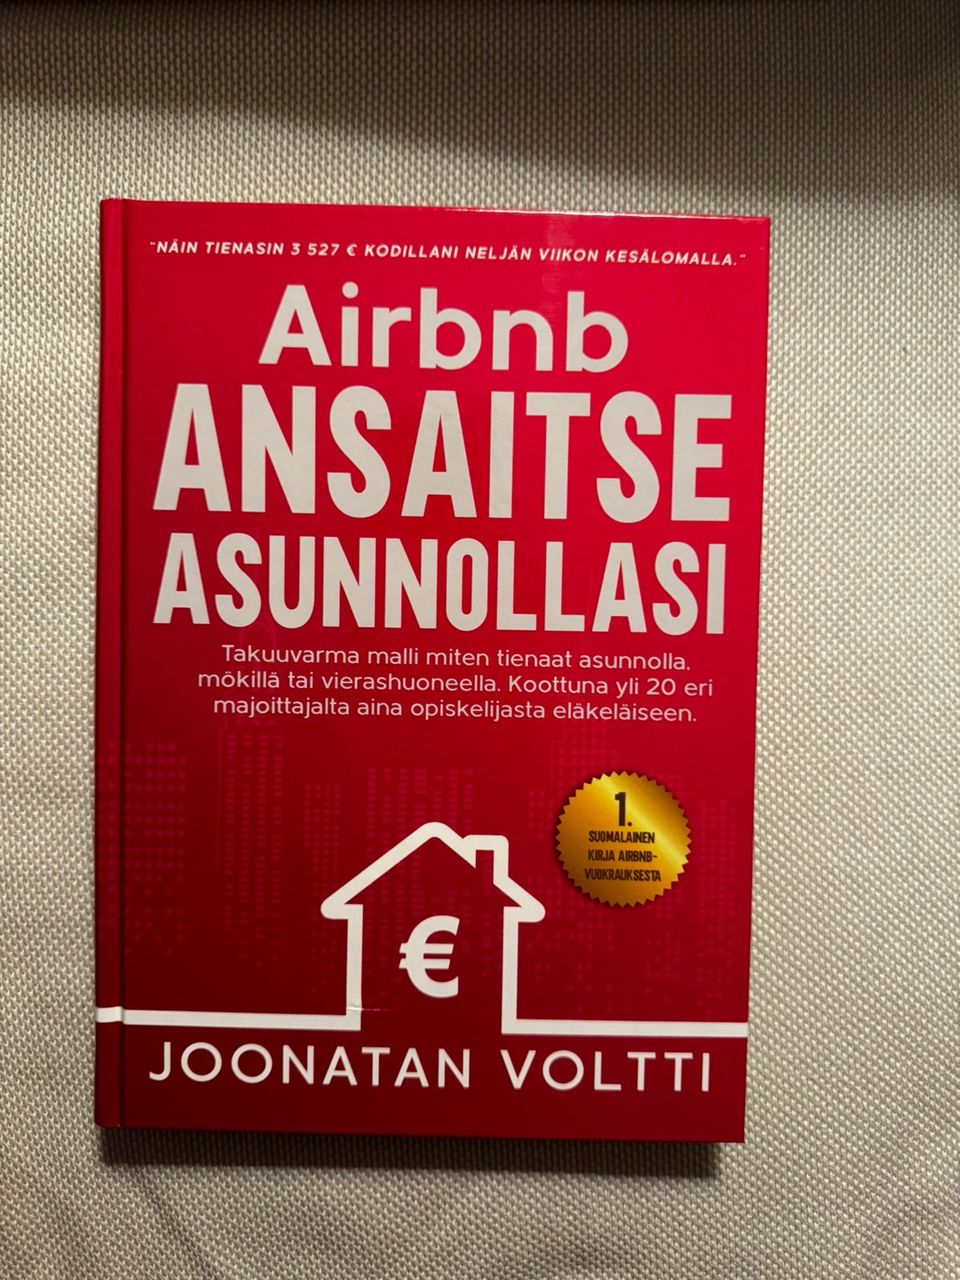 AirBnb ansaitse asunnollasi Joonatan Voltti kirja